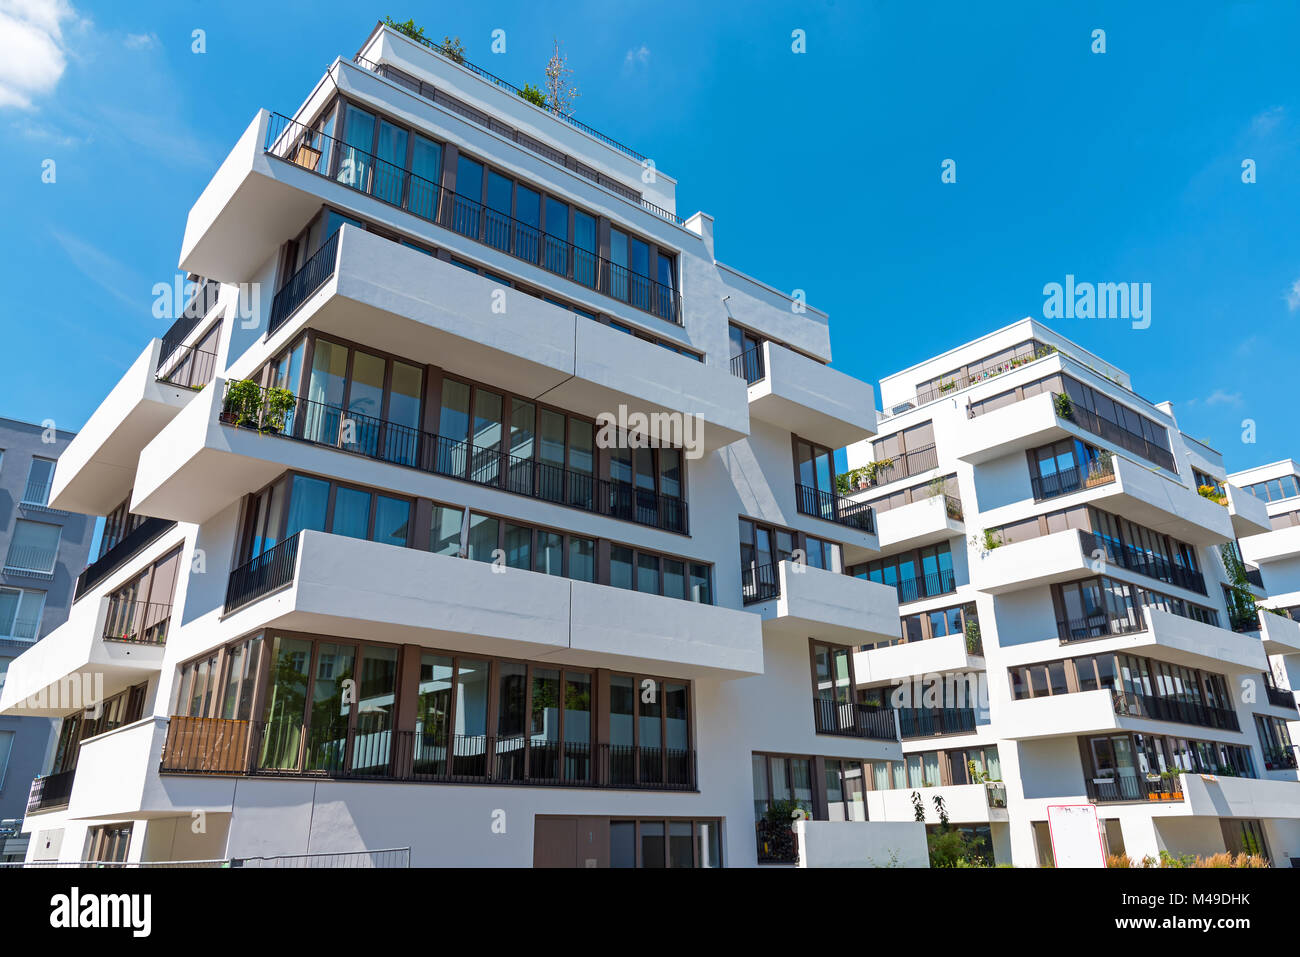 Maison moderne avec nombreux balcons vu à Berlin, Allemagne Banque D'Images